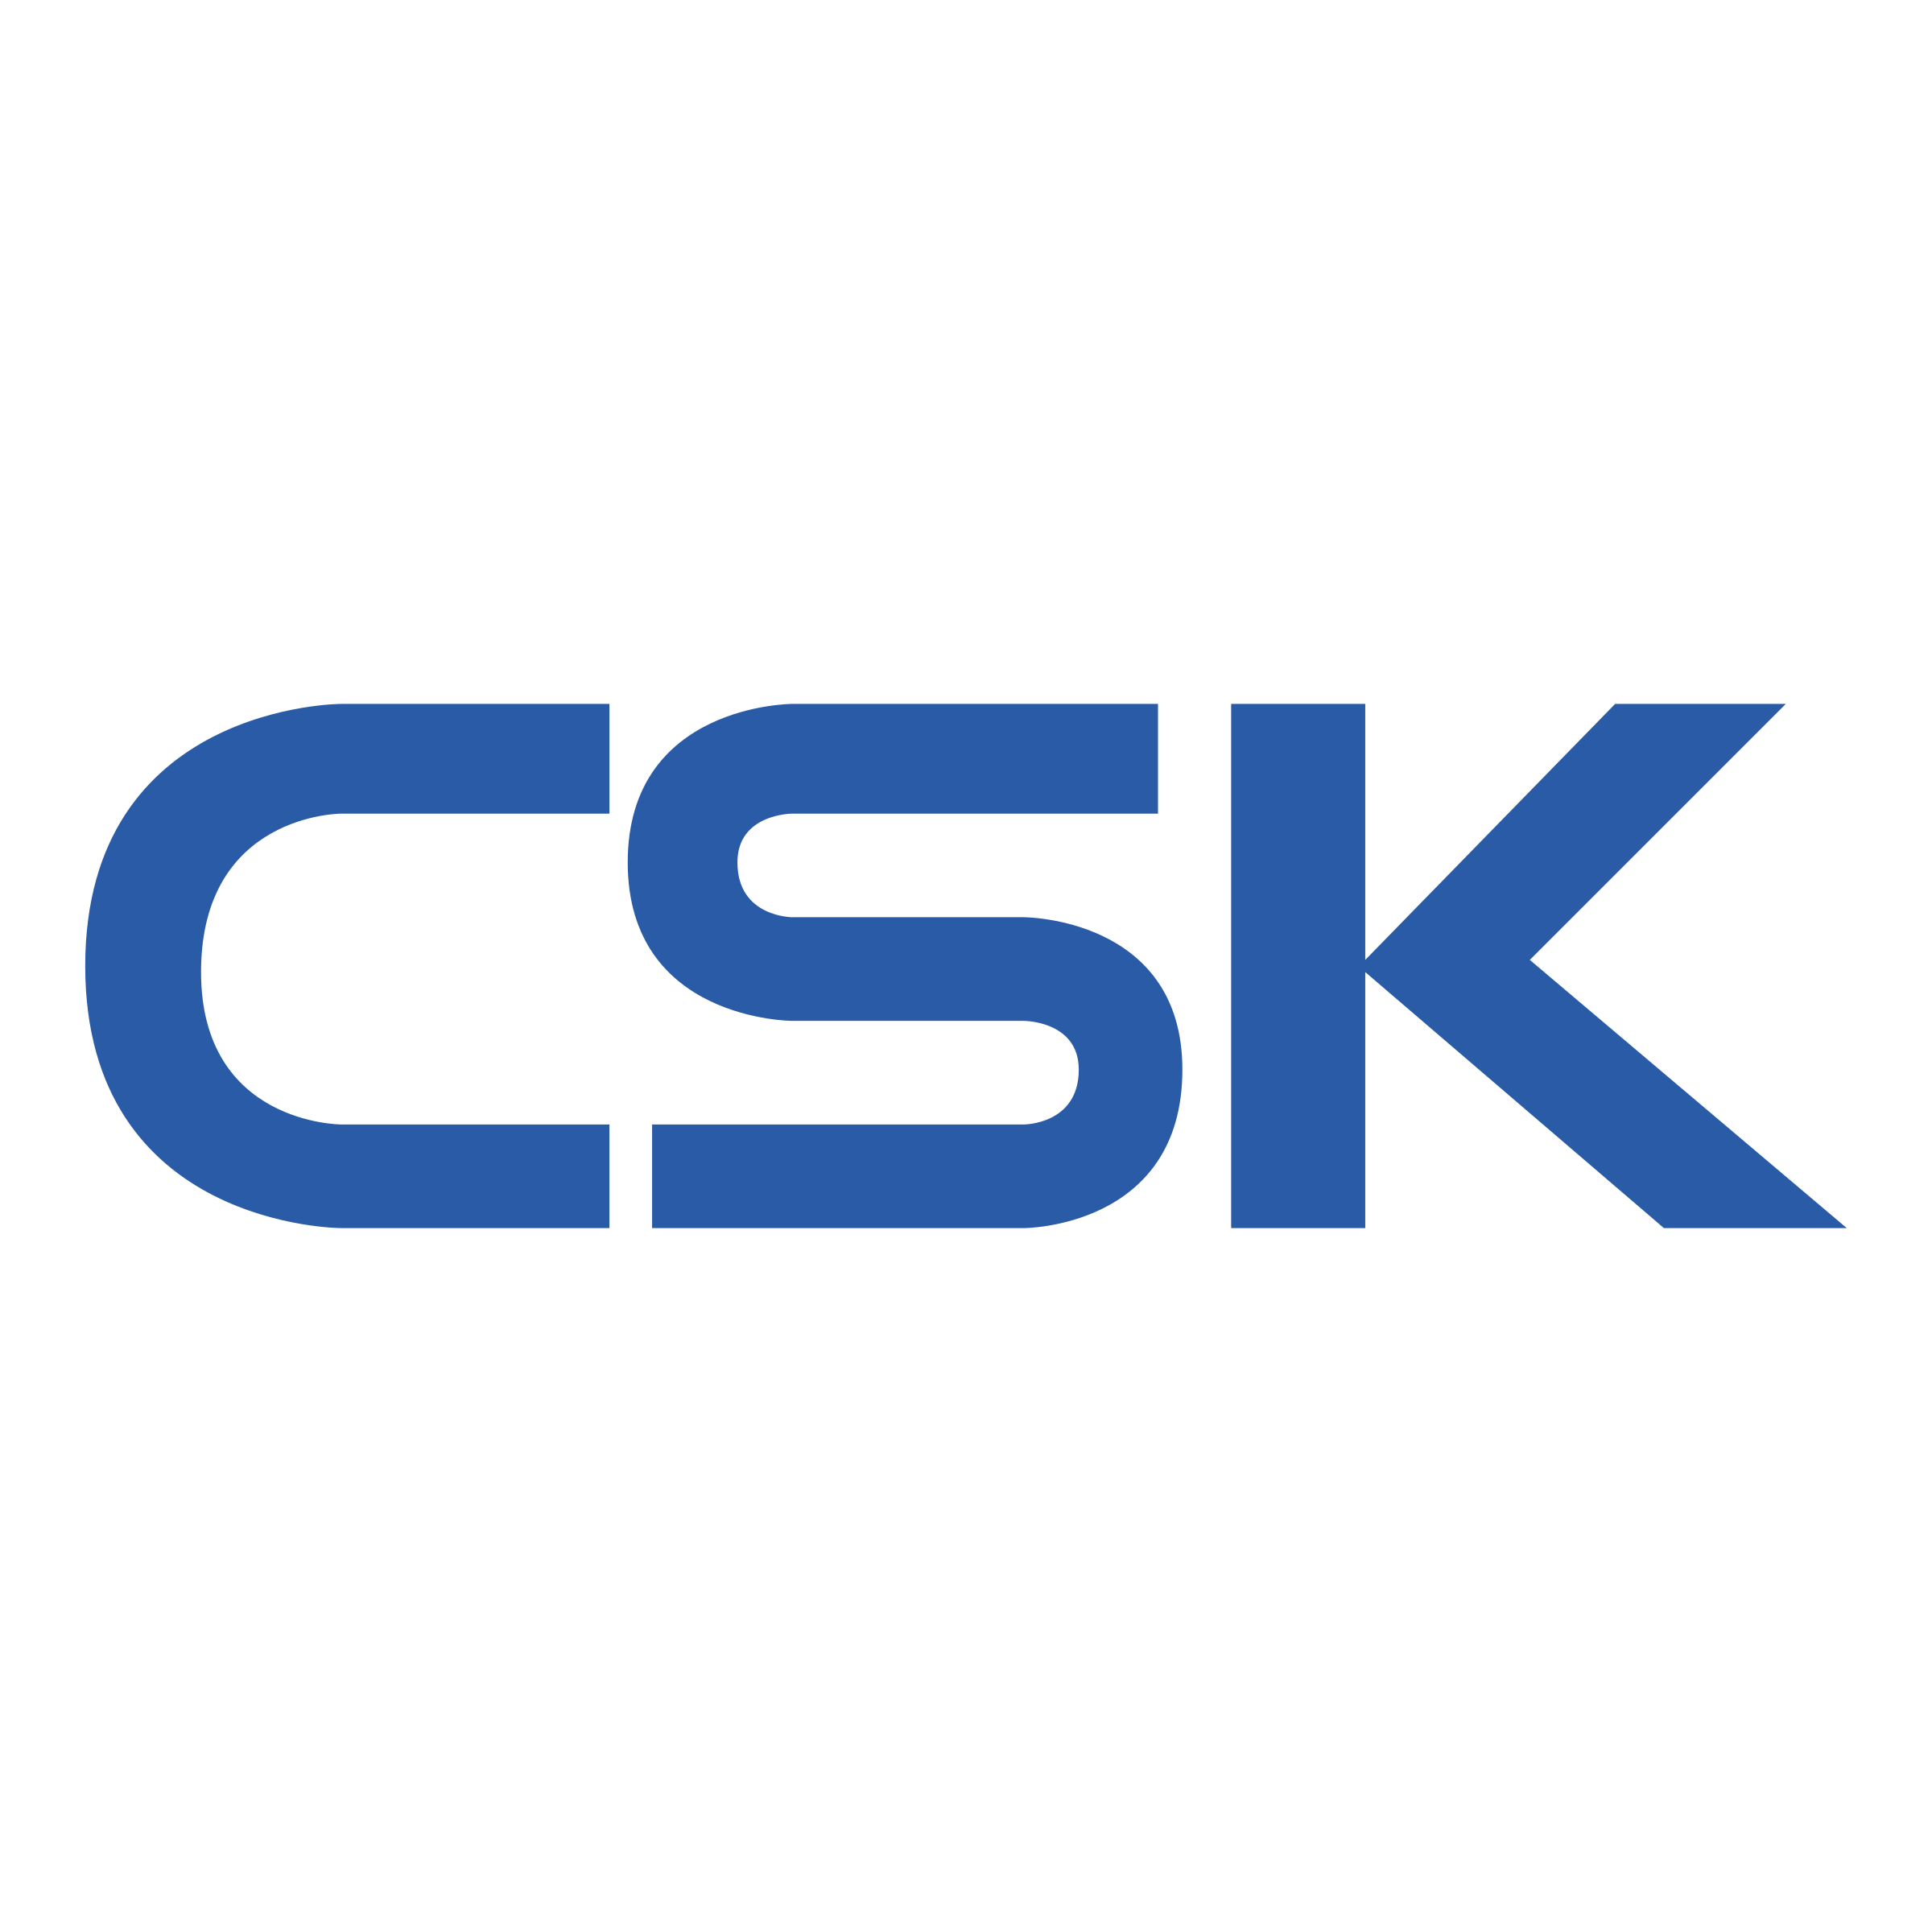 CSK Logo - CSK Logo PNG Transparent & SVG Vector